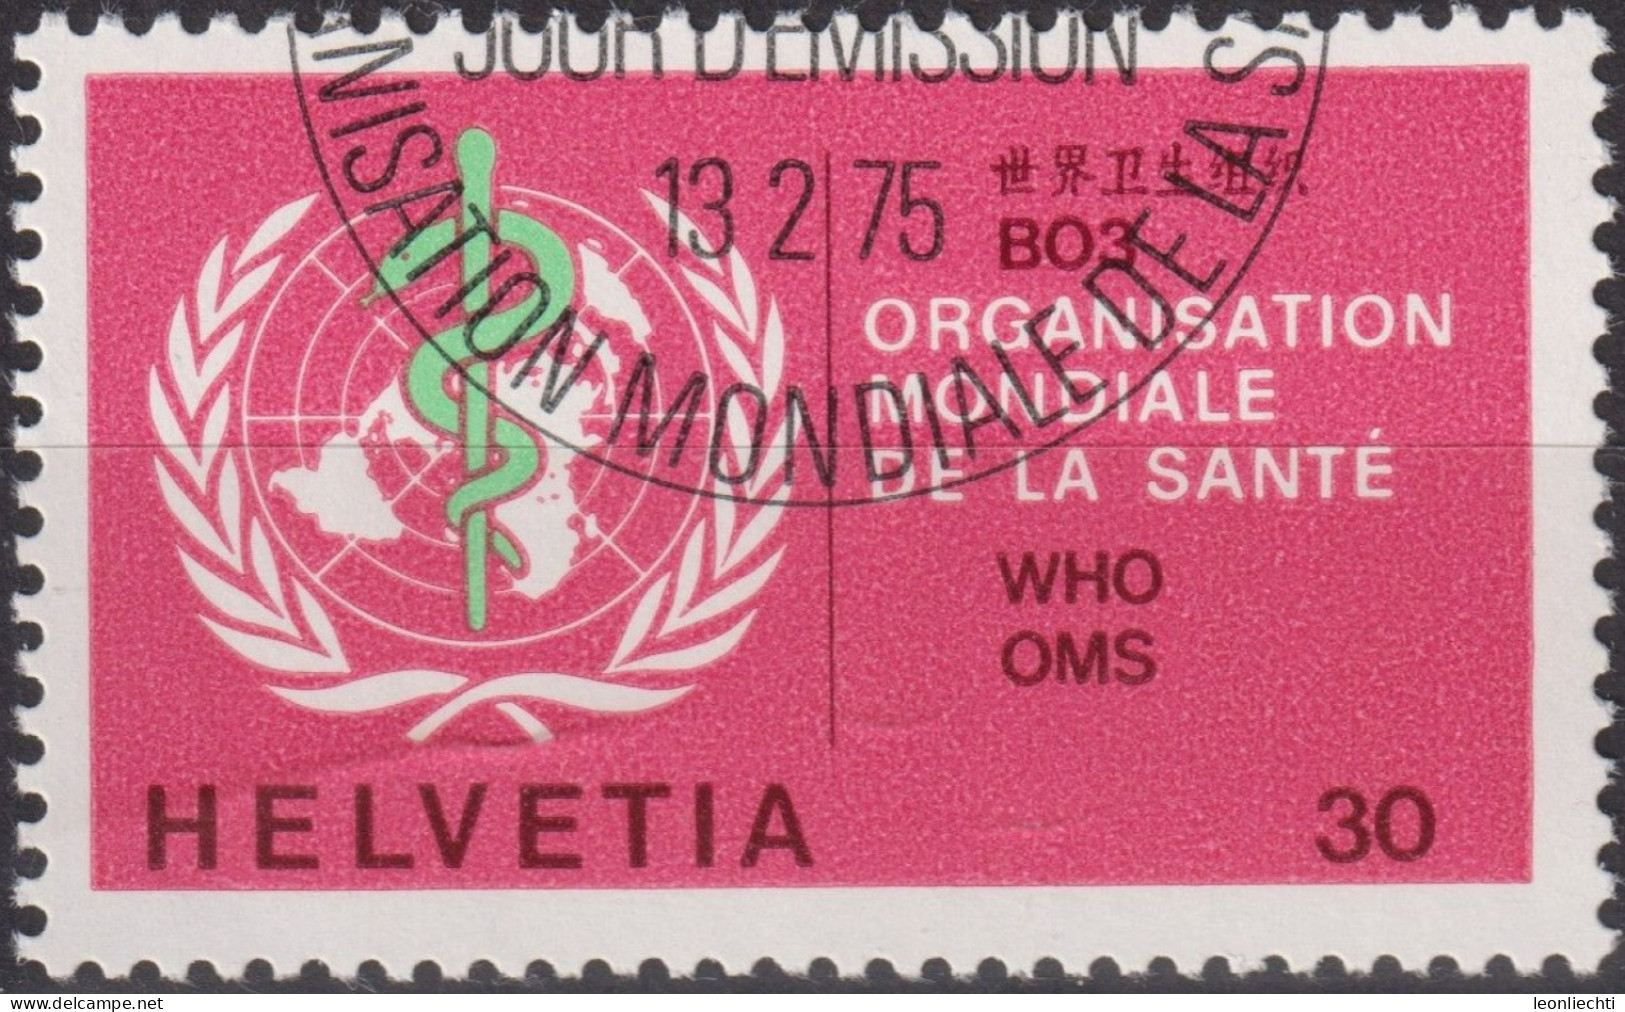 1975 Schweiz / Dienstmarke OMS ° Mi:CH-OMS 36, Yt:CH S446,Zum:CH-OMS 36, Emblem OMS - Dienstzegels